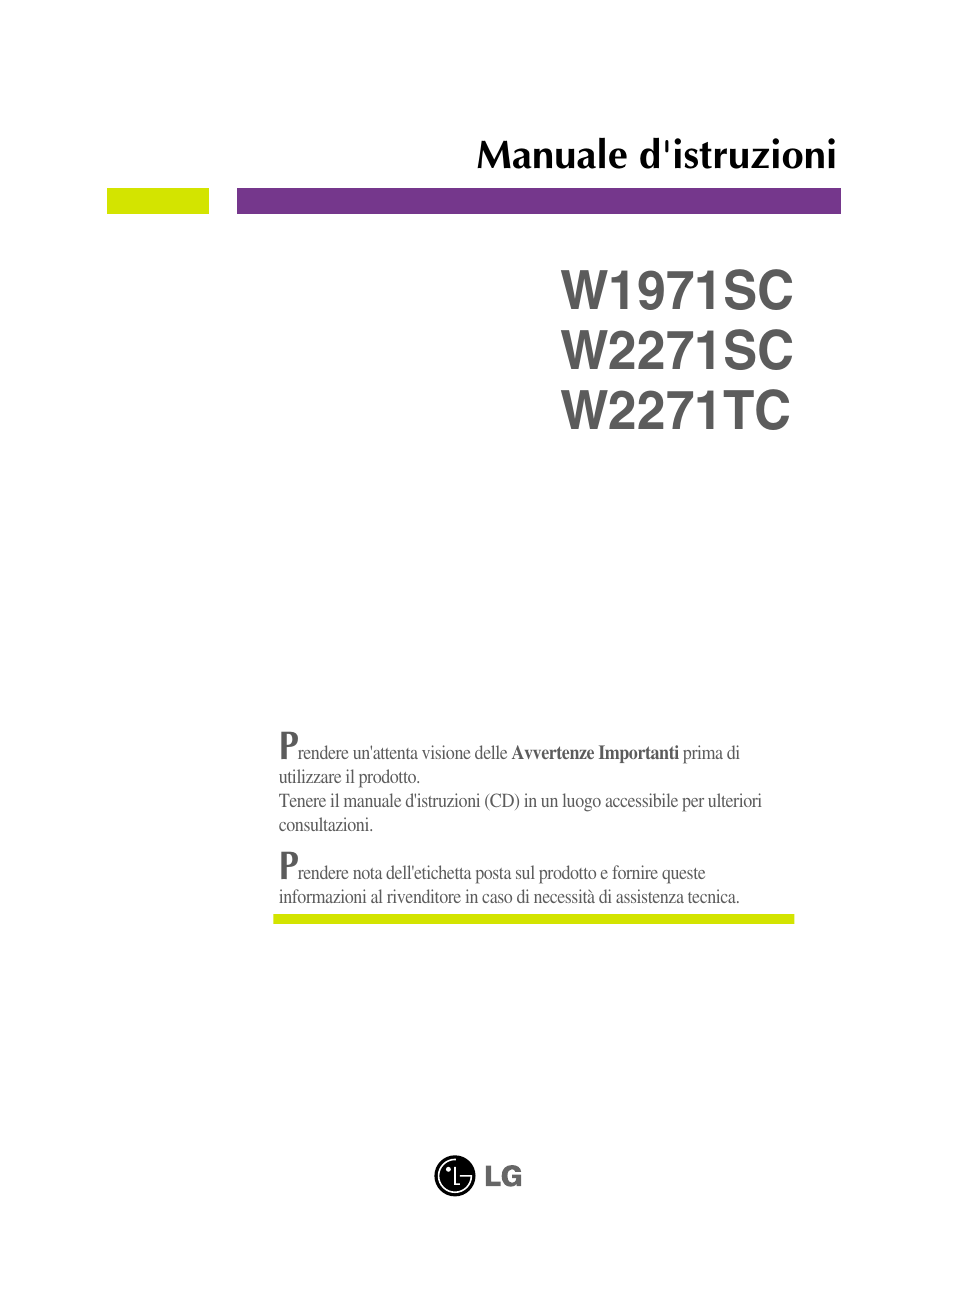 LG W2271TC-PF Manuale d'uso | Pagine: 34